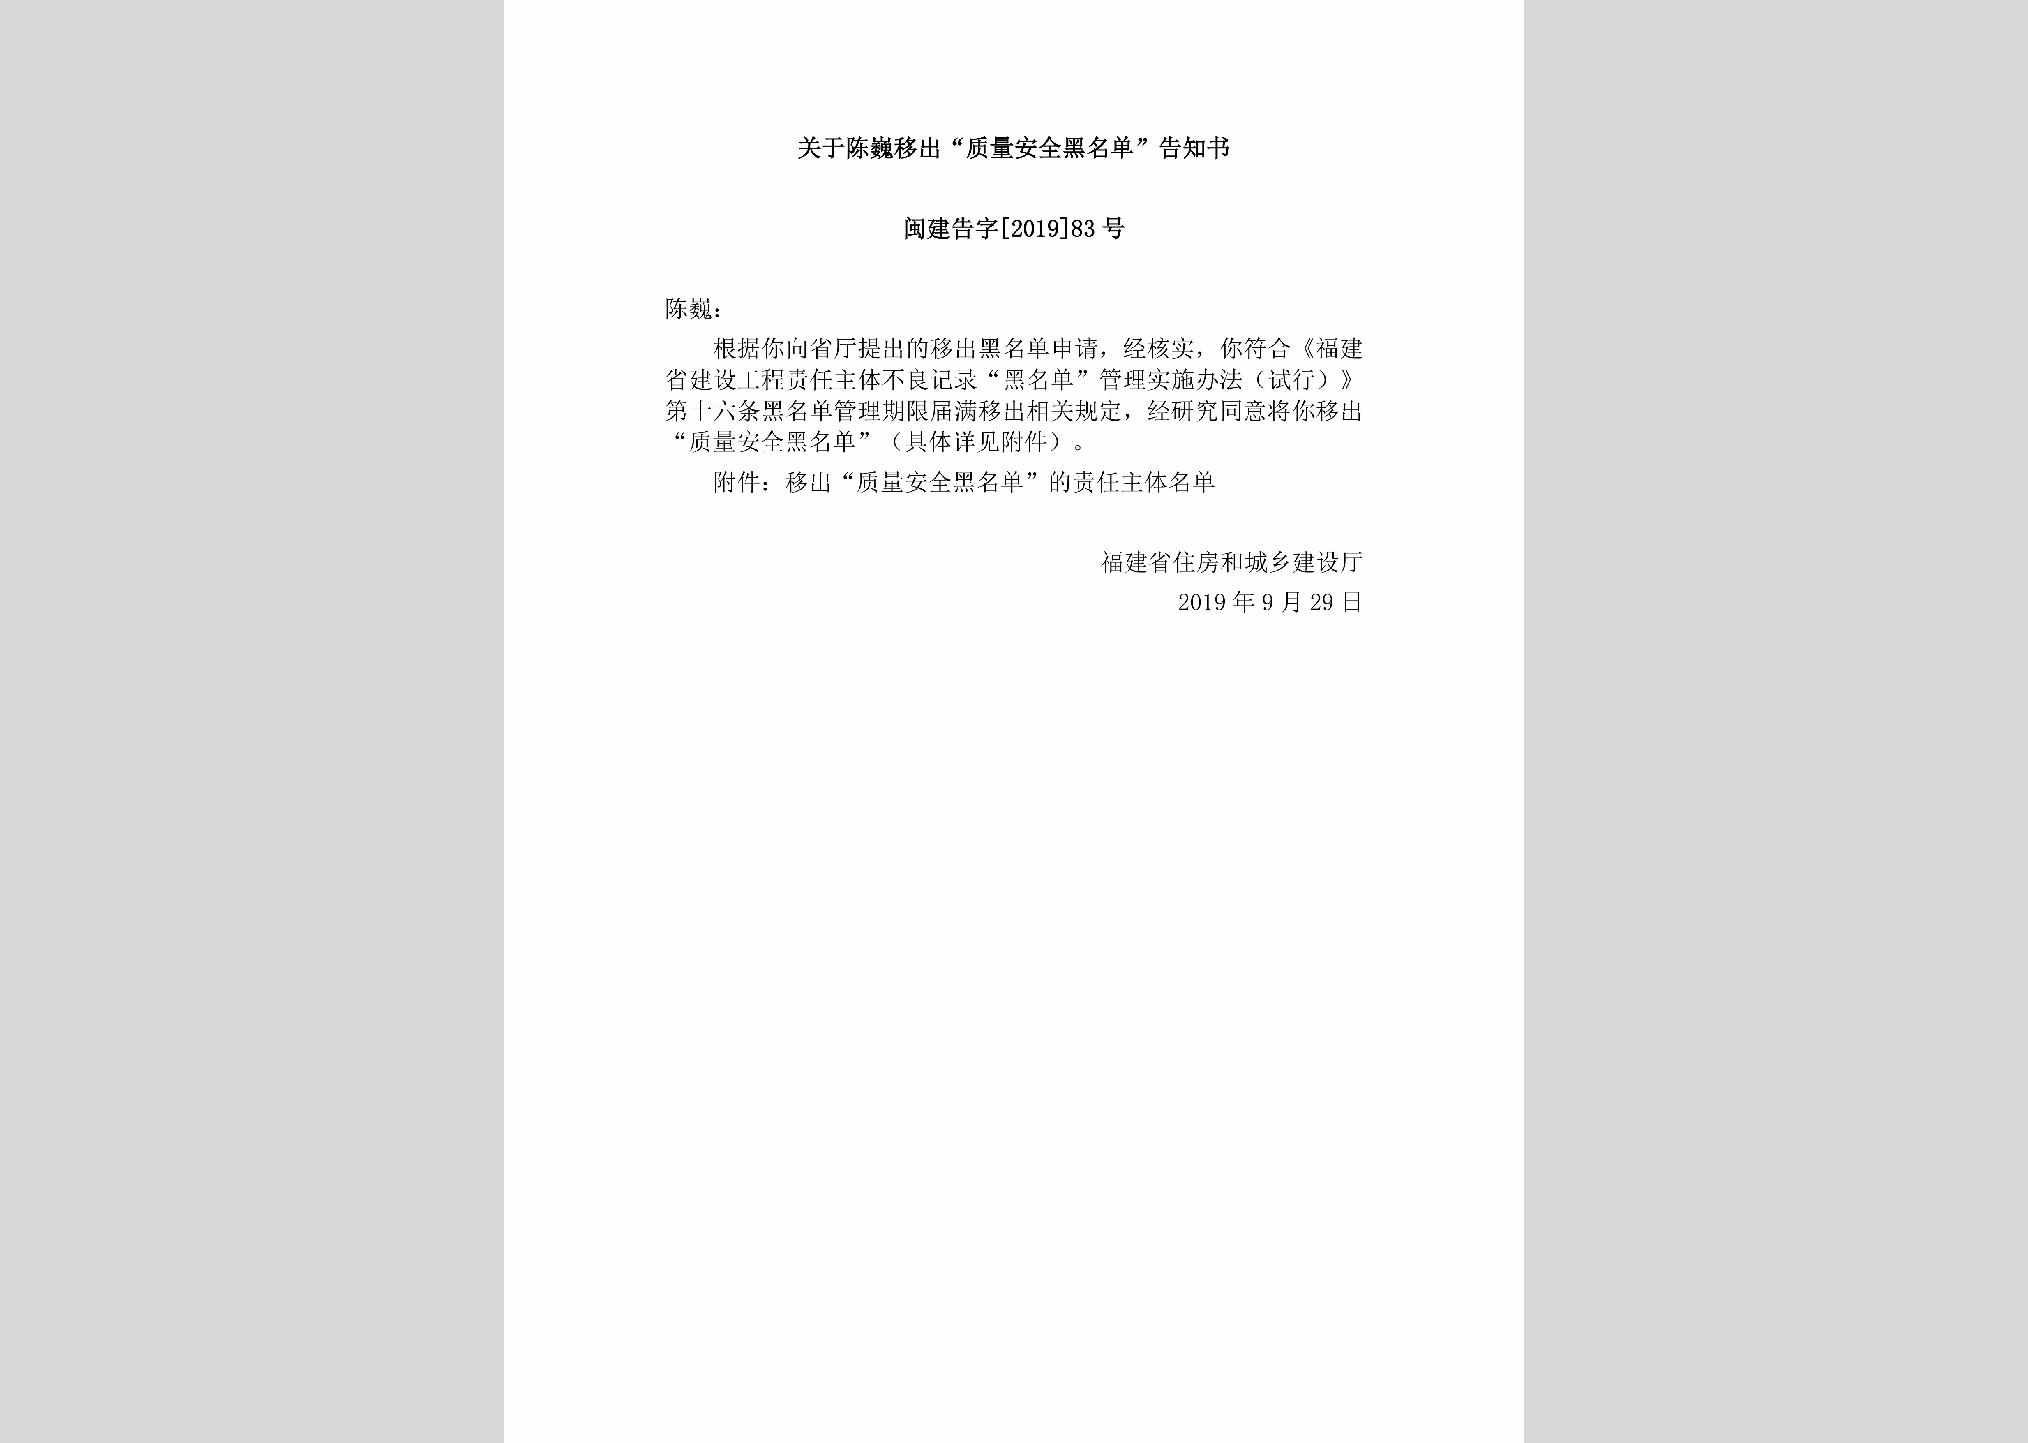 闽建告字[2019]83号：关于陈巍移出“质量安全黑名单”告知书